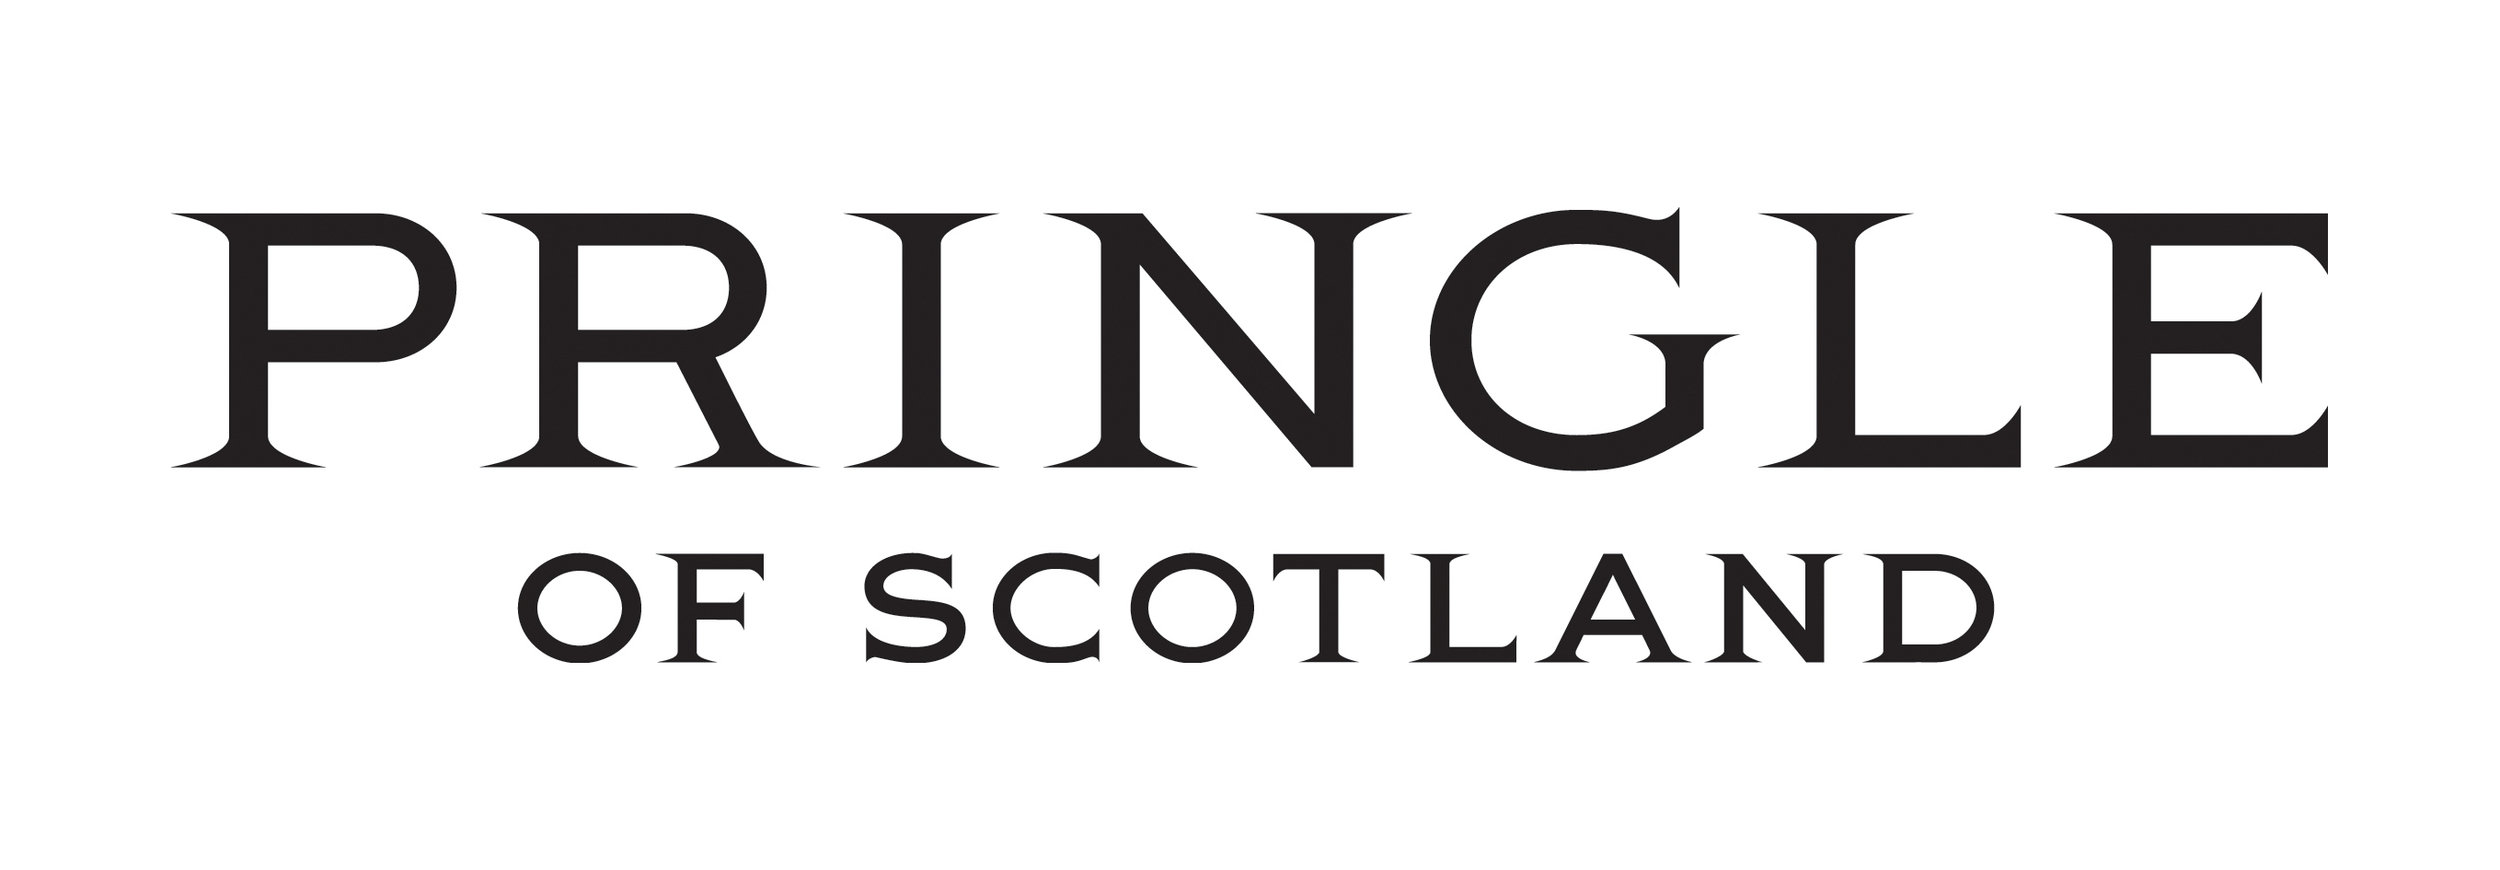 pringle-of-scotland_myshopify_com_logo.jpg